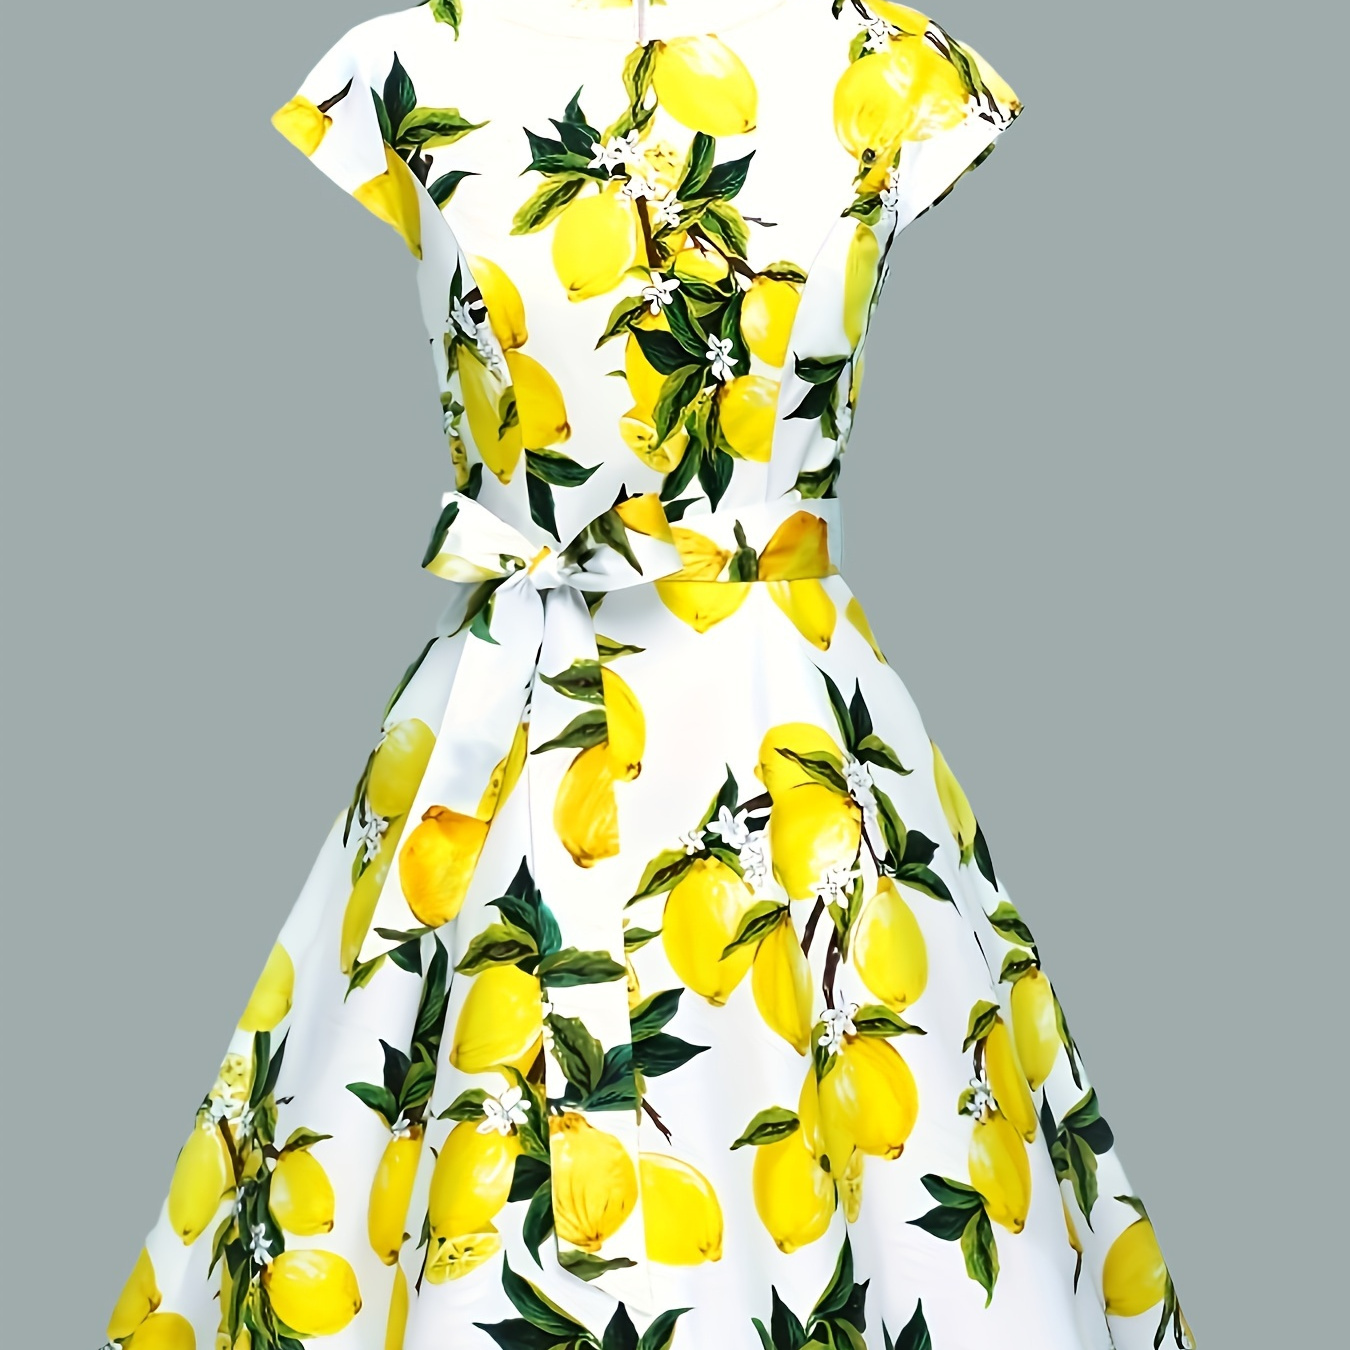 

Lemon Print Crew Neck Dress, Elegant Cap Sleeve Belted Dress For Spring & Summer, Women's Clothing